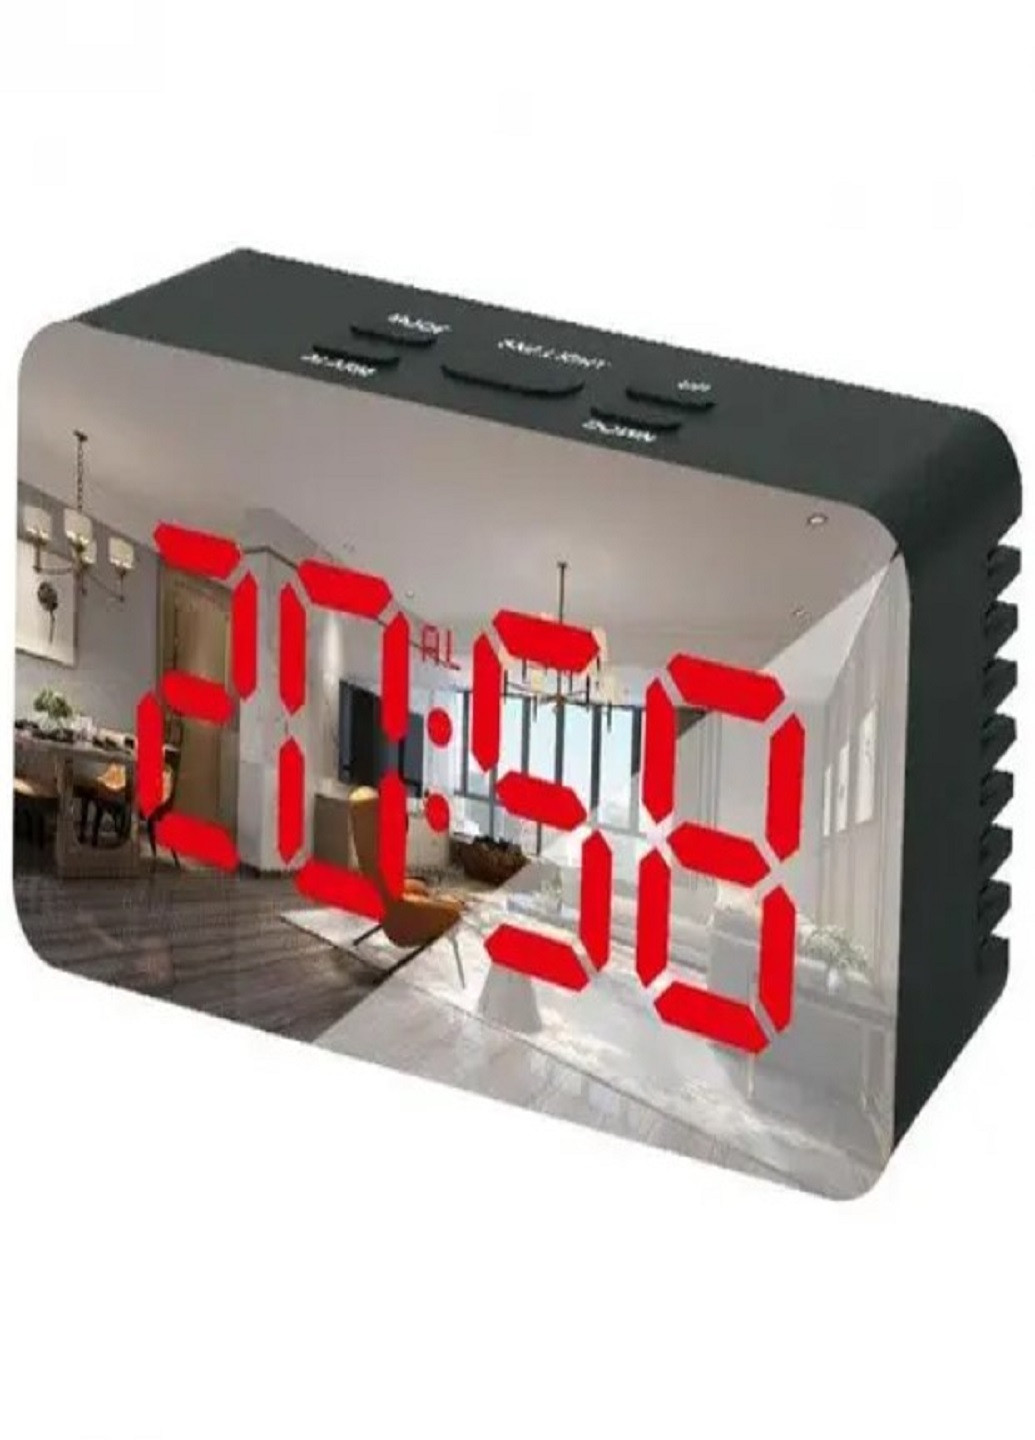 Настольные электронные часы с подсветкой и питанием от сети 220В или батареек DS-3658 Черный корпус Красная подсветка VTech (263429173)